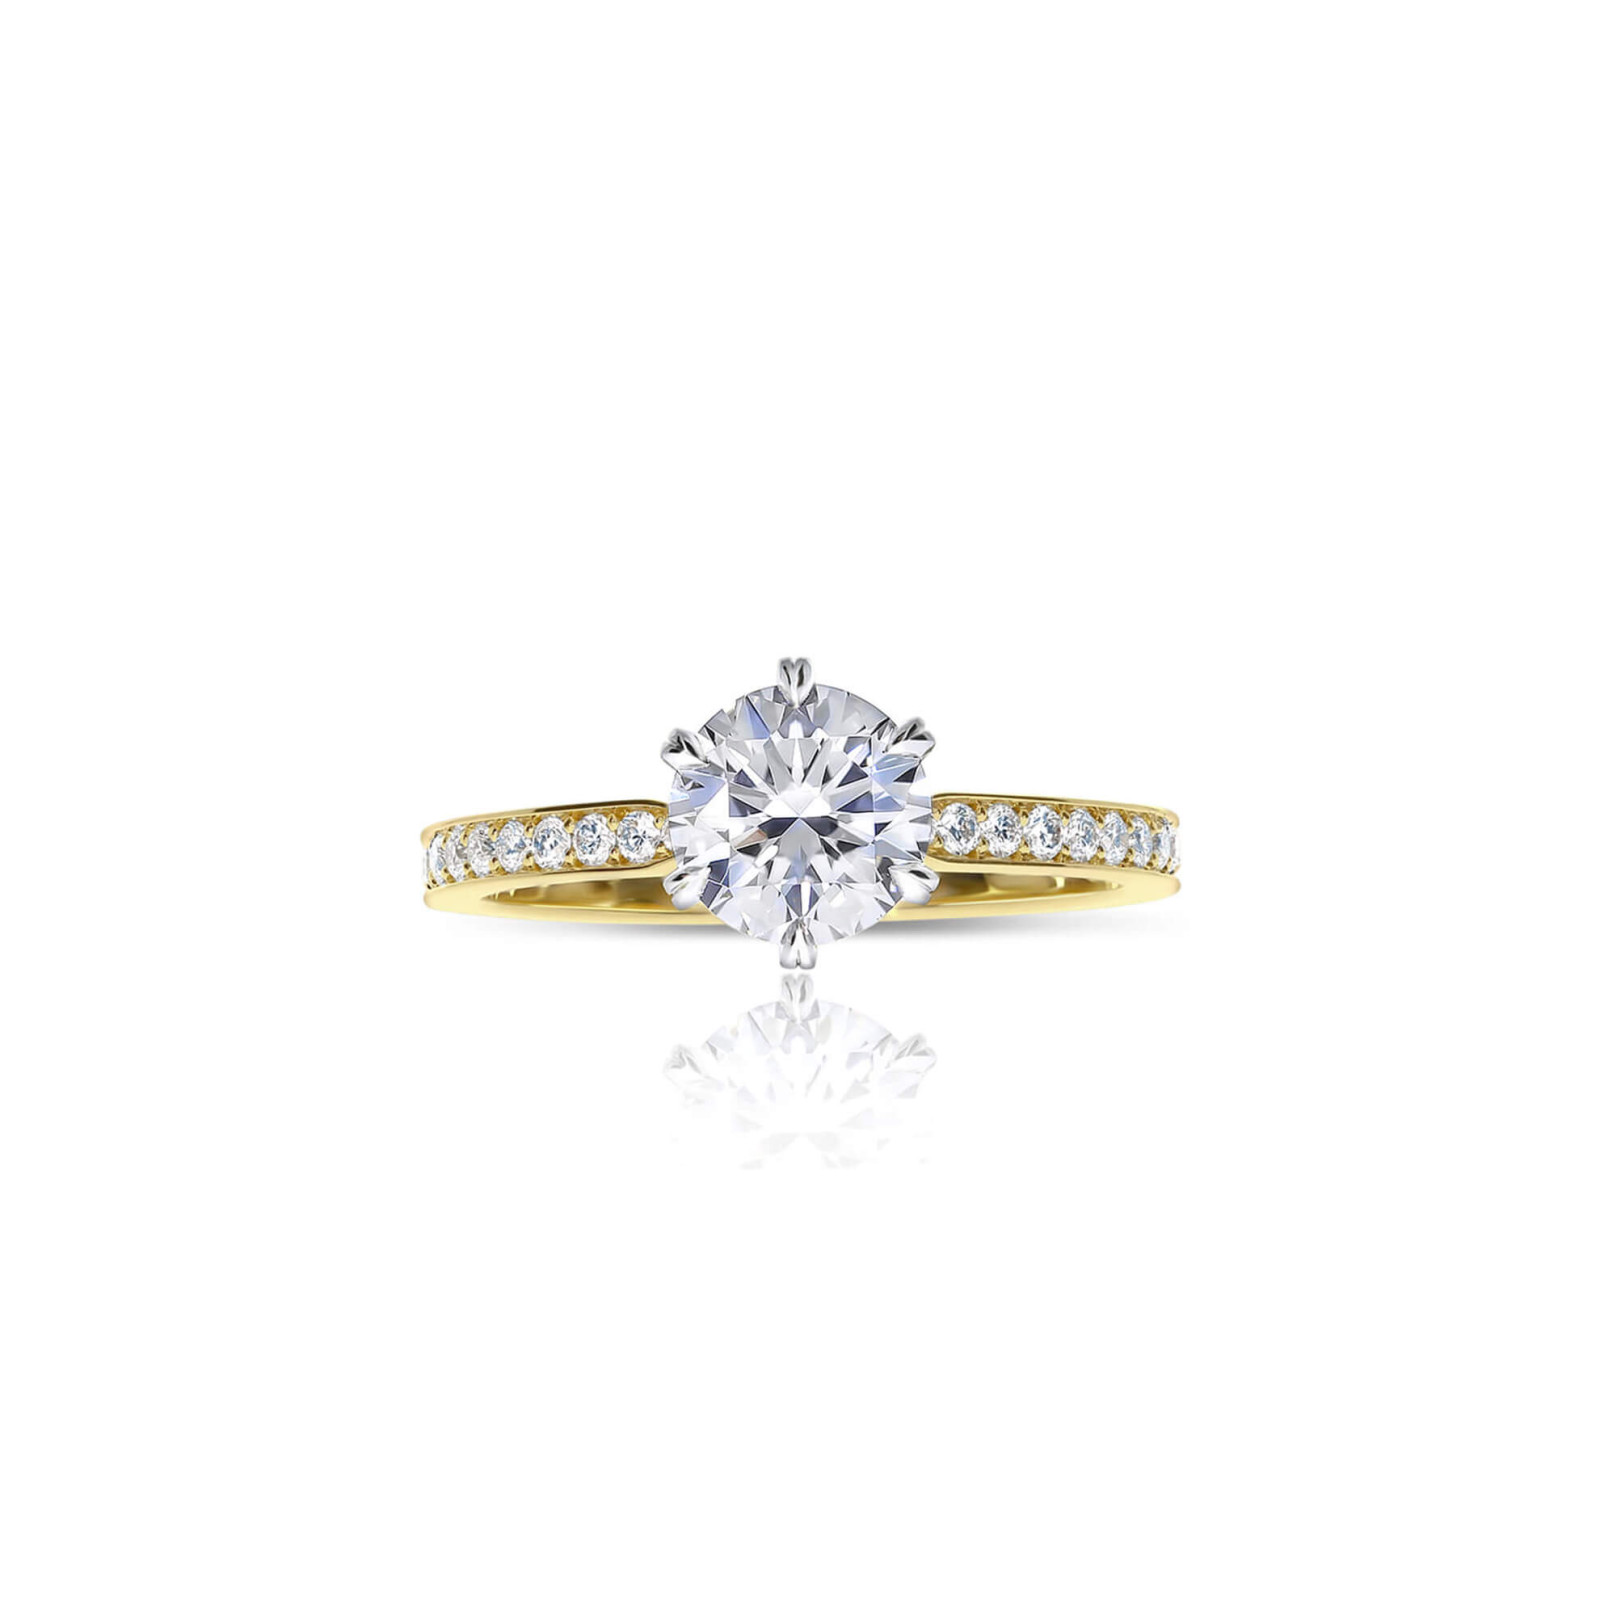 Round Diamond Engagement Ring with Pavé Set Diamond Band